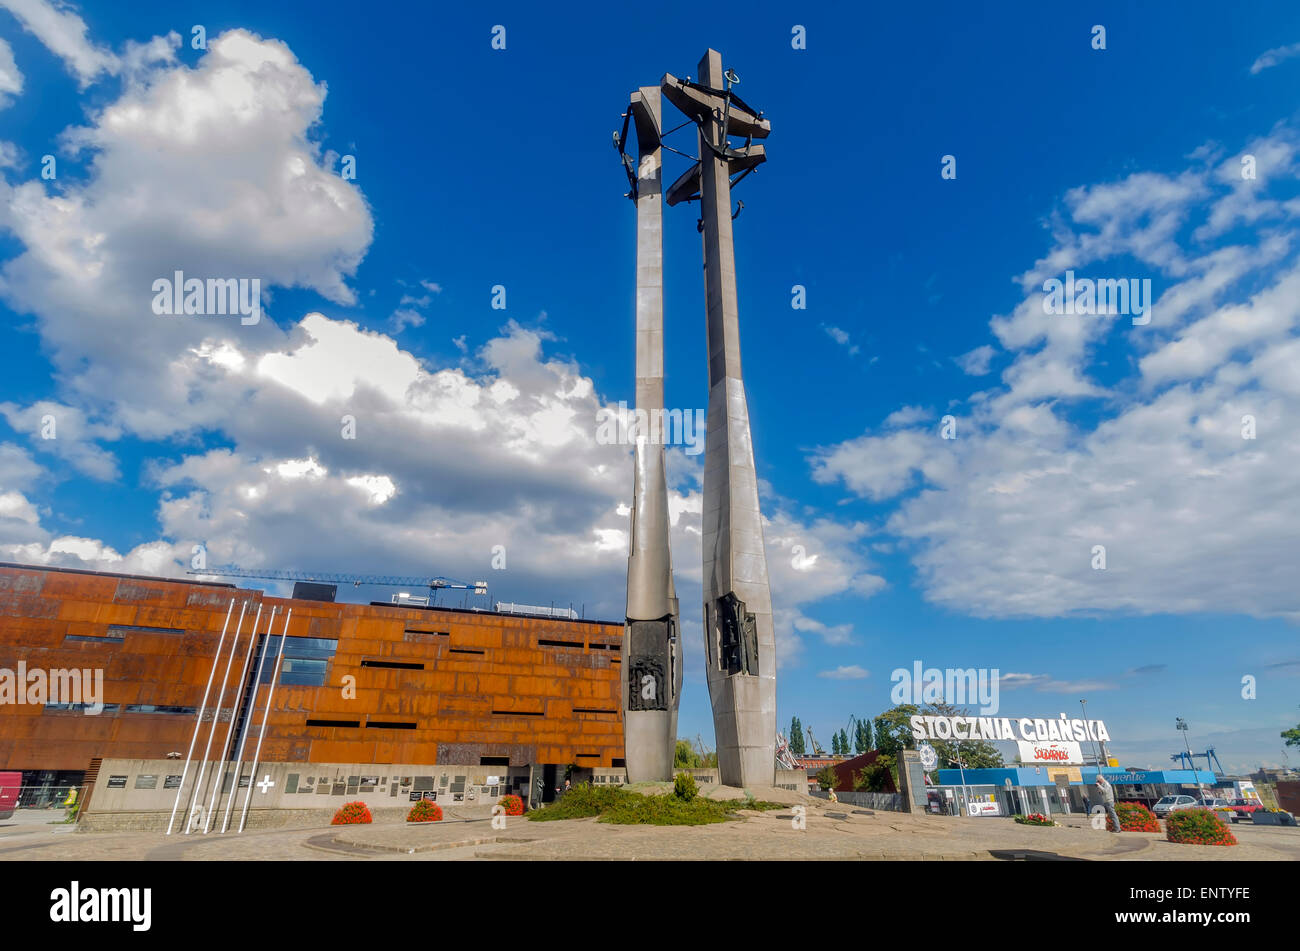 La place de la solidarité Monument aux Morts Les travailleurs des chantiers navals de Gdansk Pologne 1970 Banque D'Images